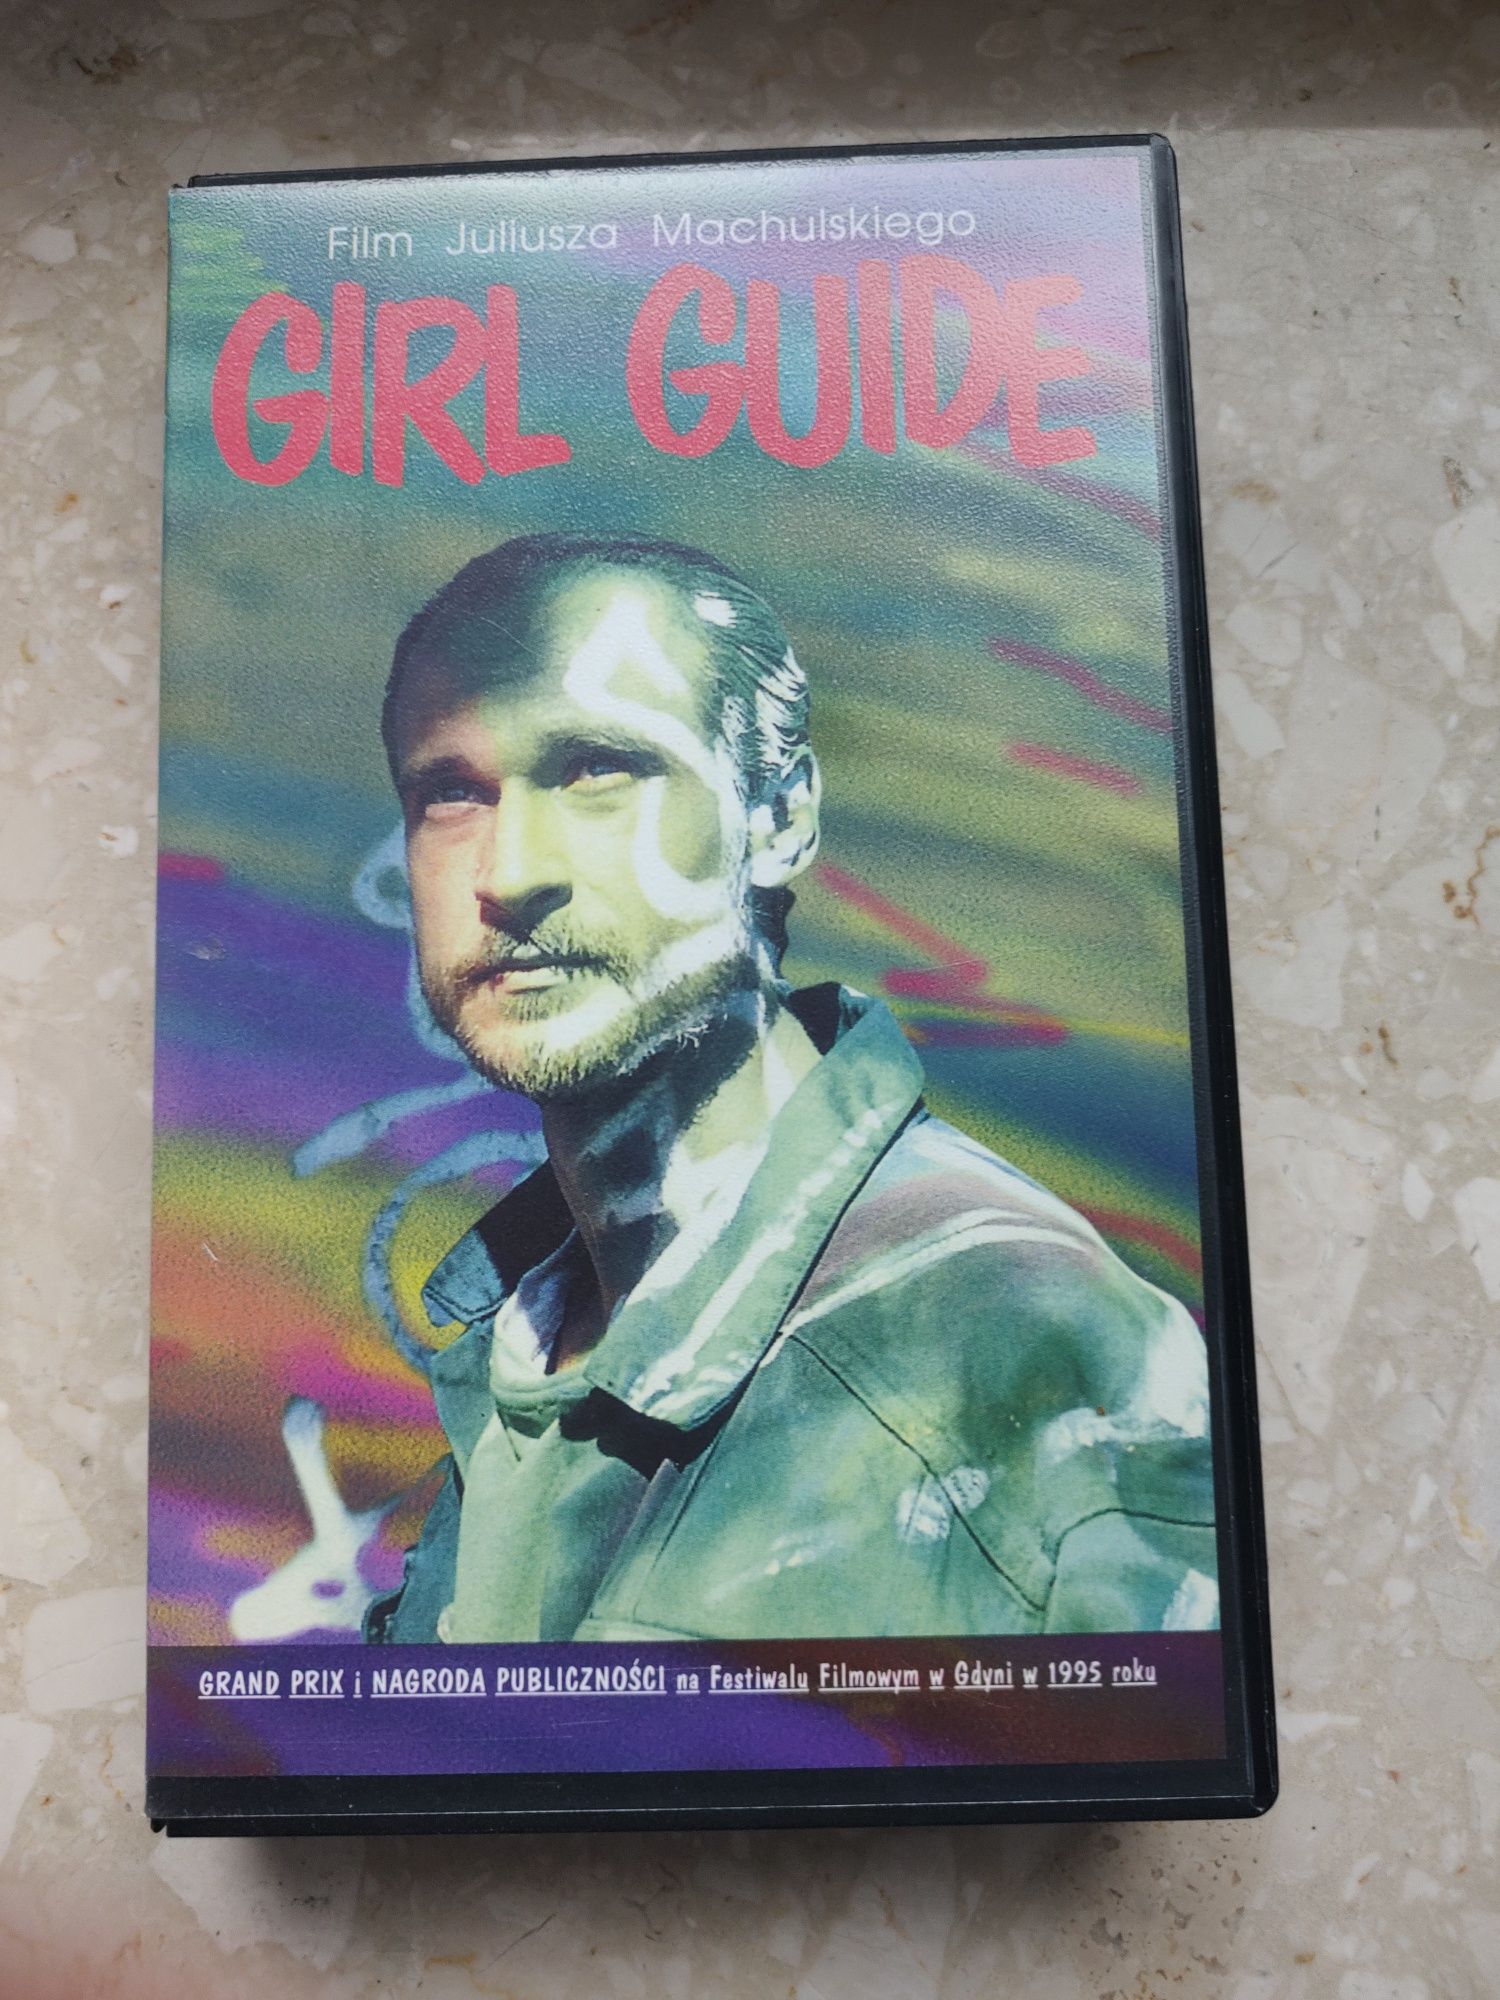 Film Girl guide vhs